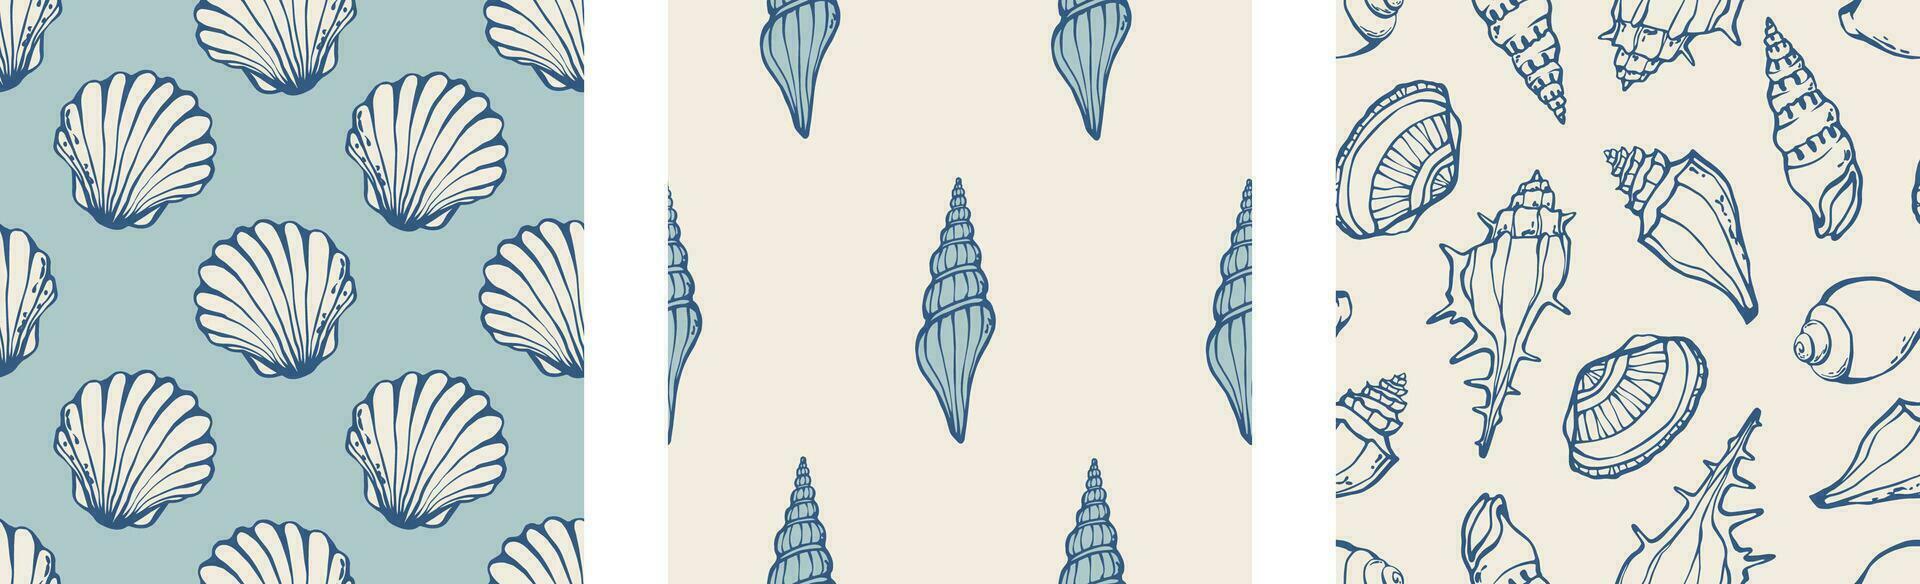 conchas do mar fundos conjunto mão desenhado azul marinho banheiro papeis de parede impressão Projeto com diferente concha e berbigão cartuchos. vetor ilustração.